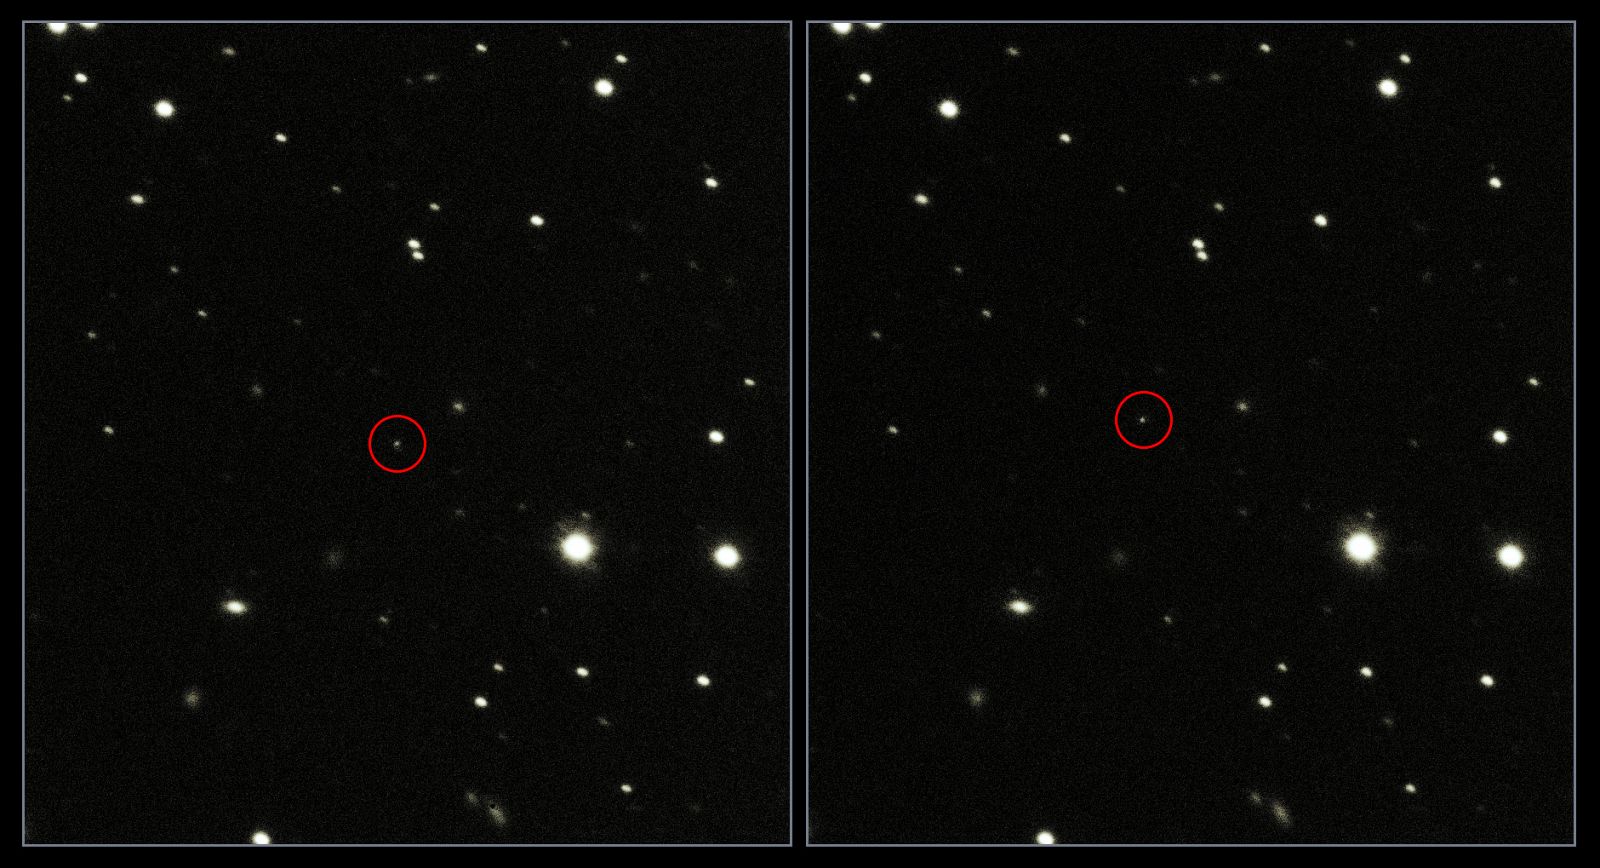 Imágenes de Gaia captadas desde el Telescopio VLT del Observatorio Europeo Austral en Chile.